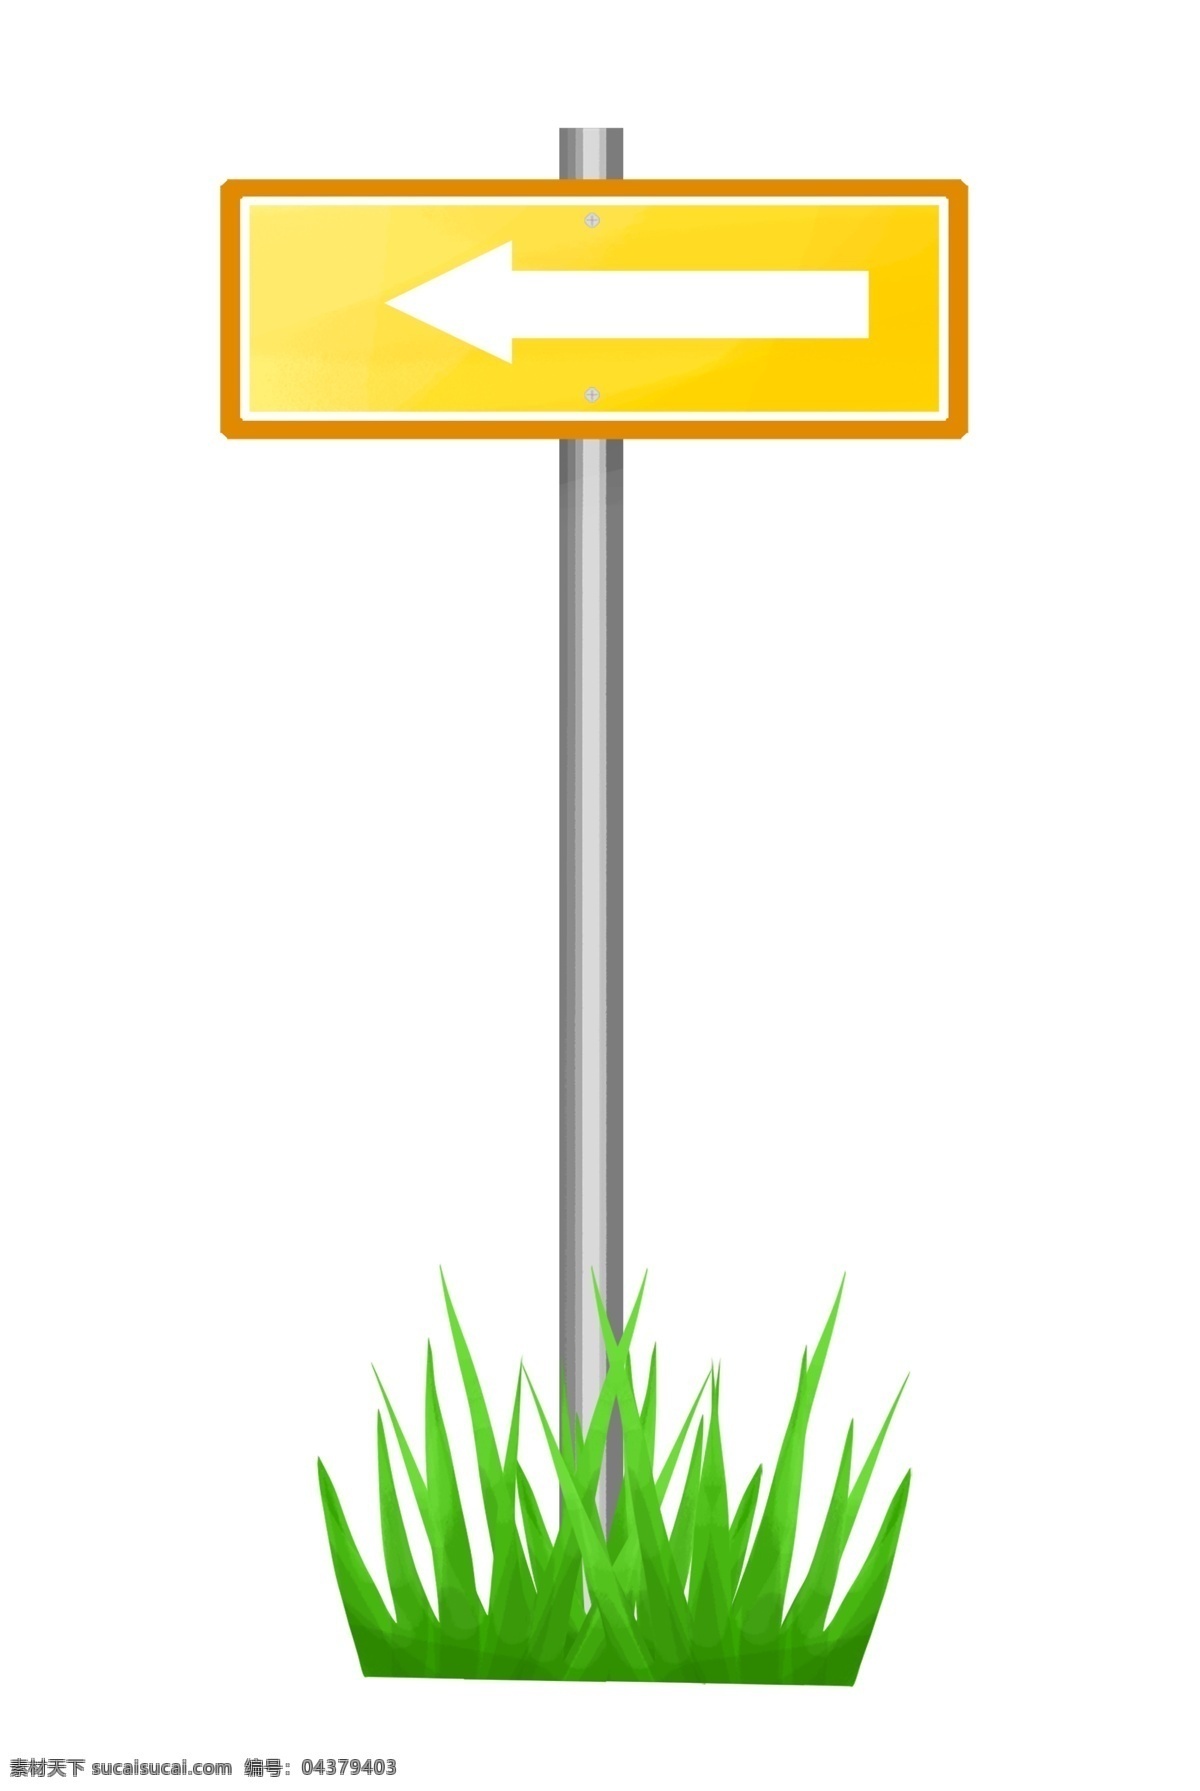 卡通 手绘 箭头 指示 指路牌 插画 指示牌 交通设施 导示 辩分方向 不锈钢 面板 纹理 矩形结构 黄色 白色 红色